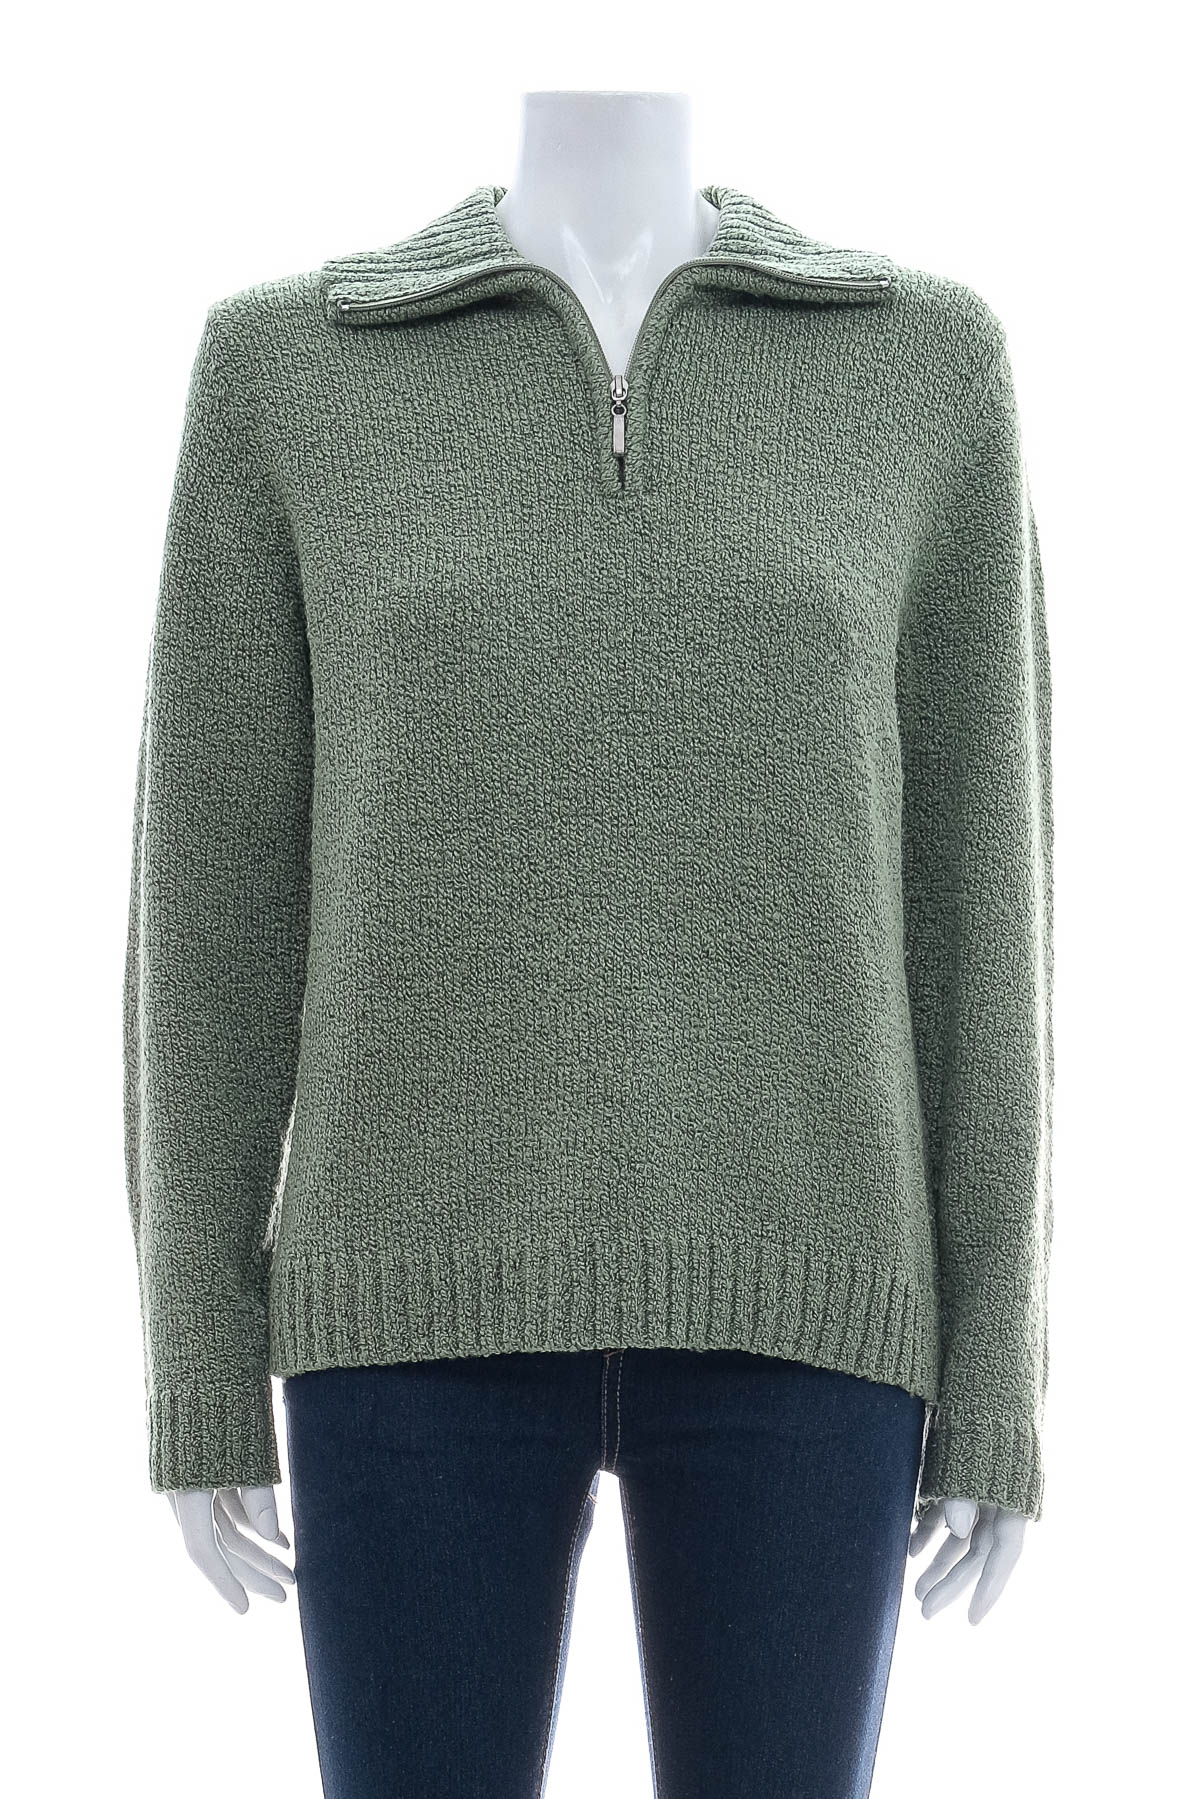 Women's sweater - CAROLYN TAYLOR - 0